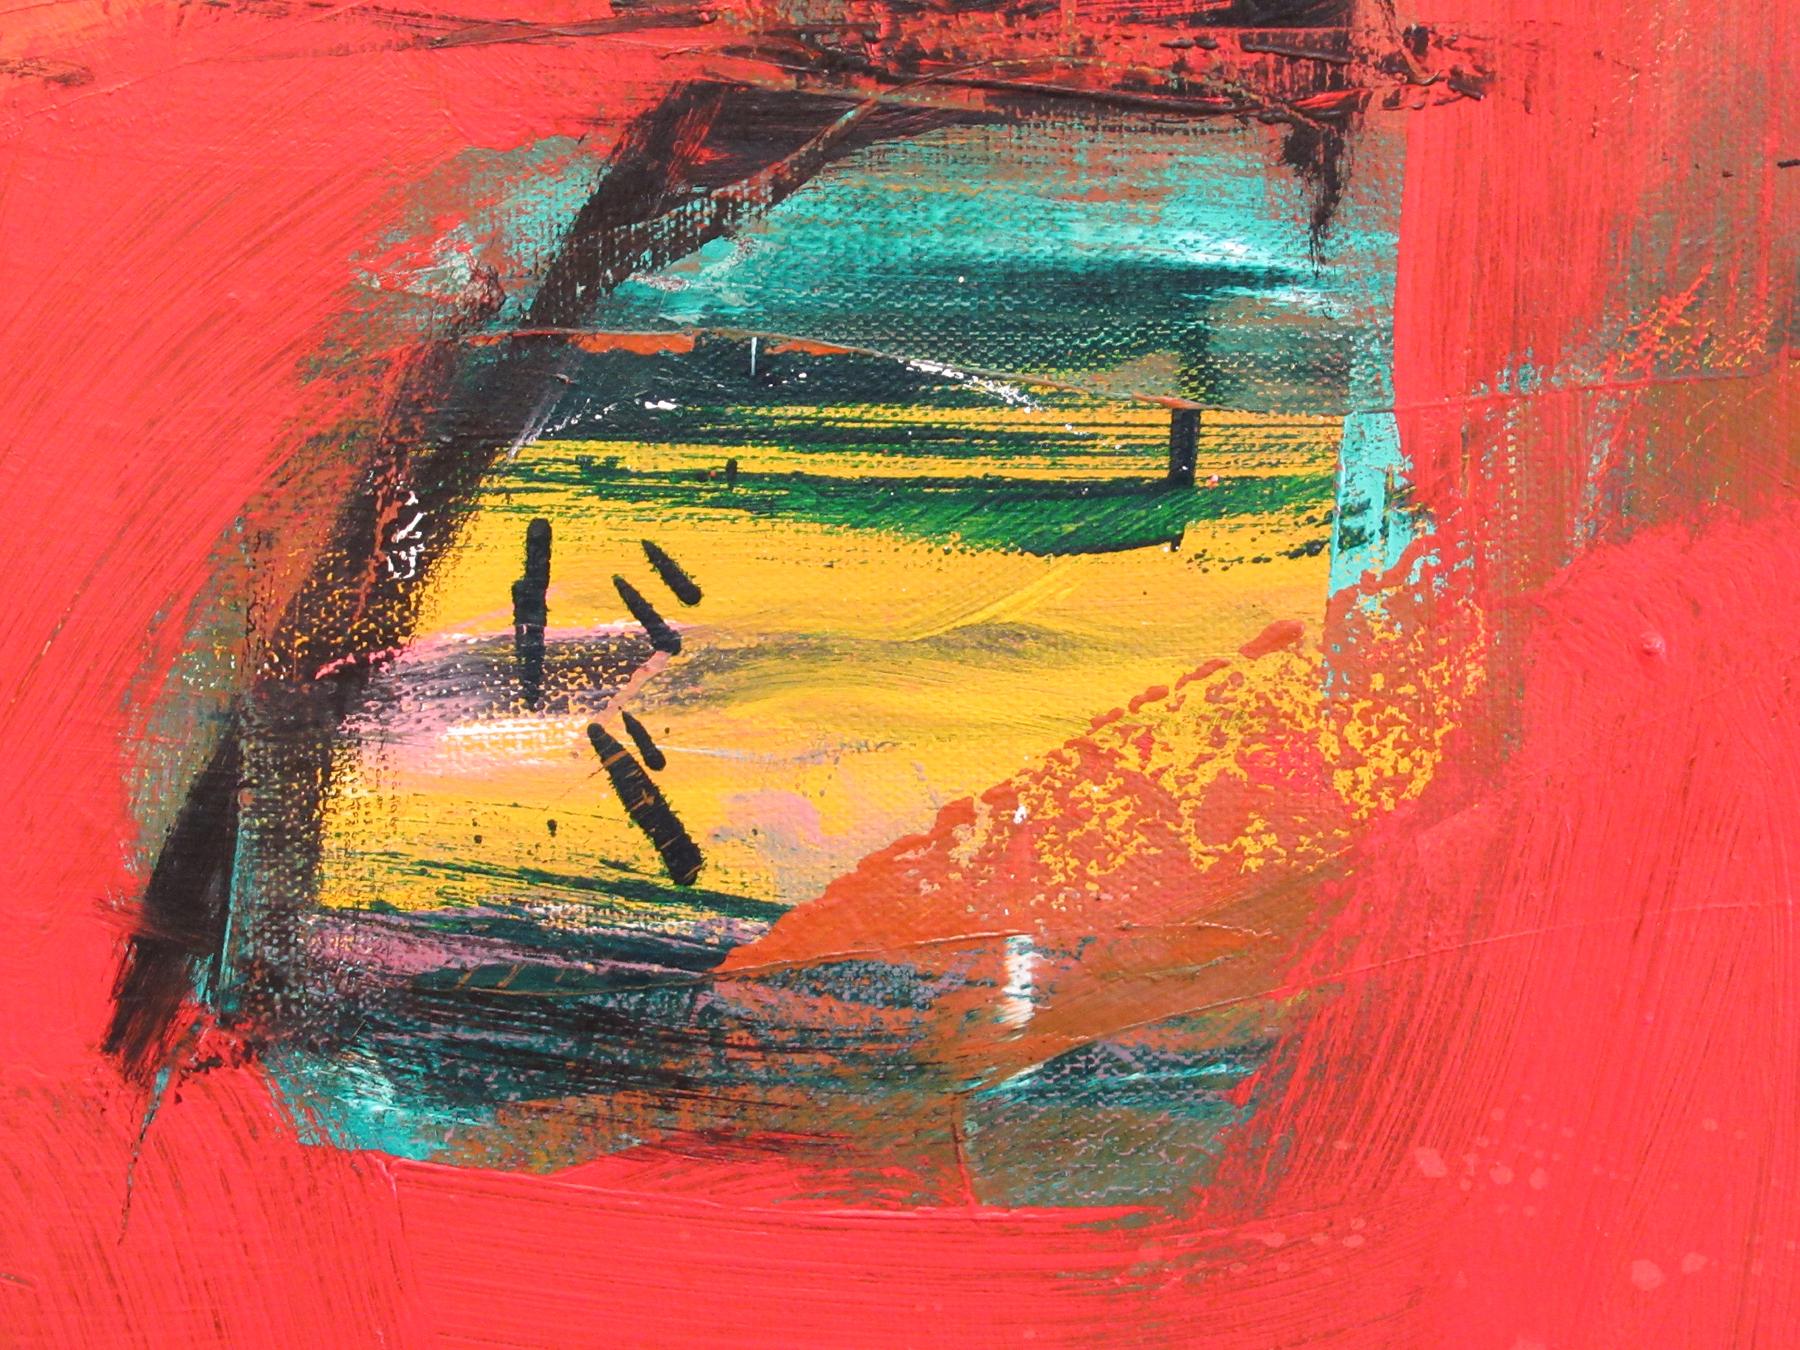 Peinture expressionniste abstraite contemporaine rouge originale signée SONGBIRDS - Expressionnisme abstrait Painting par William O'Connor